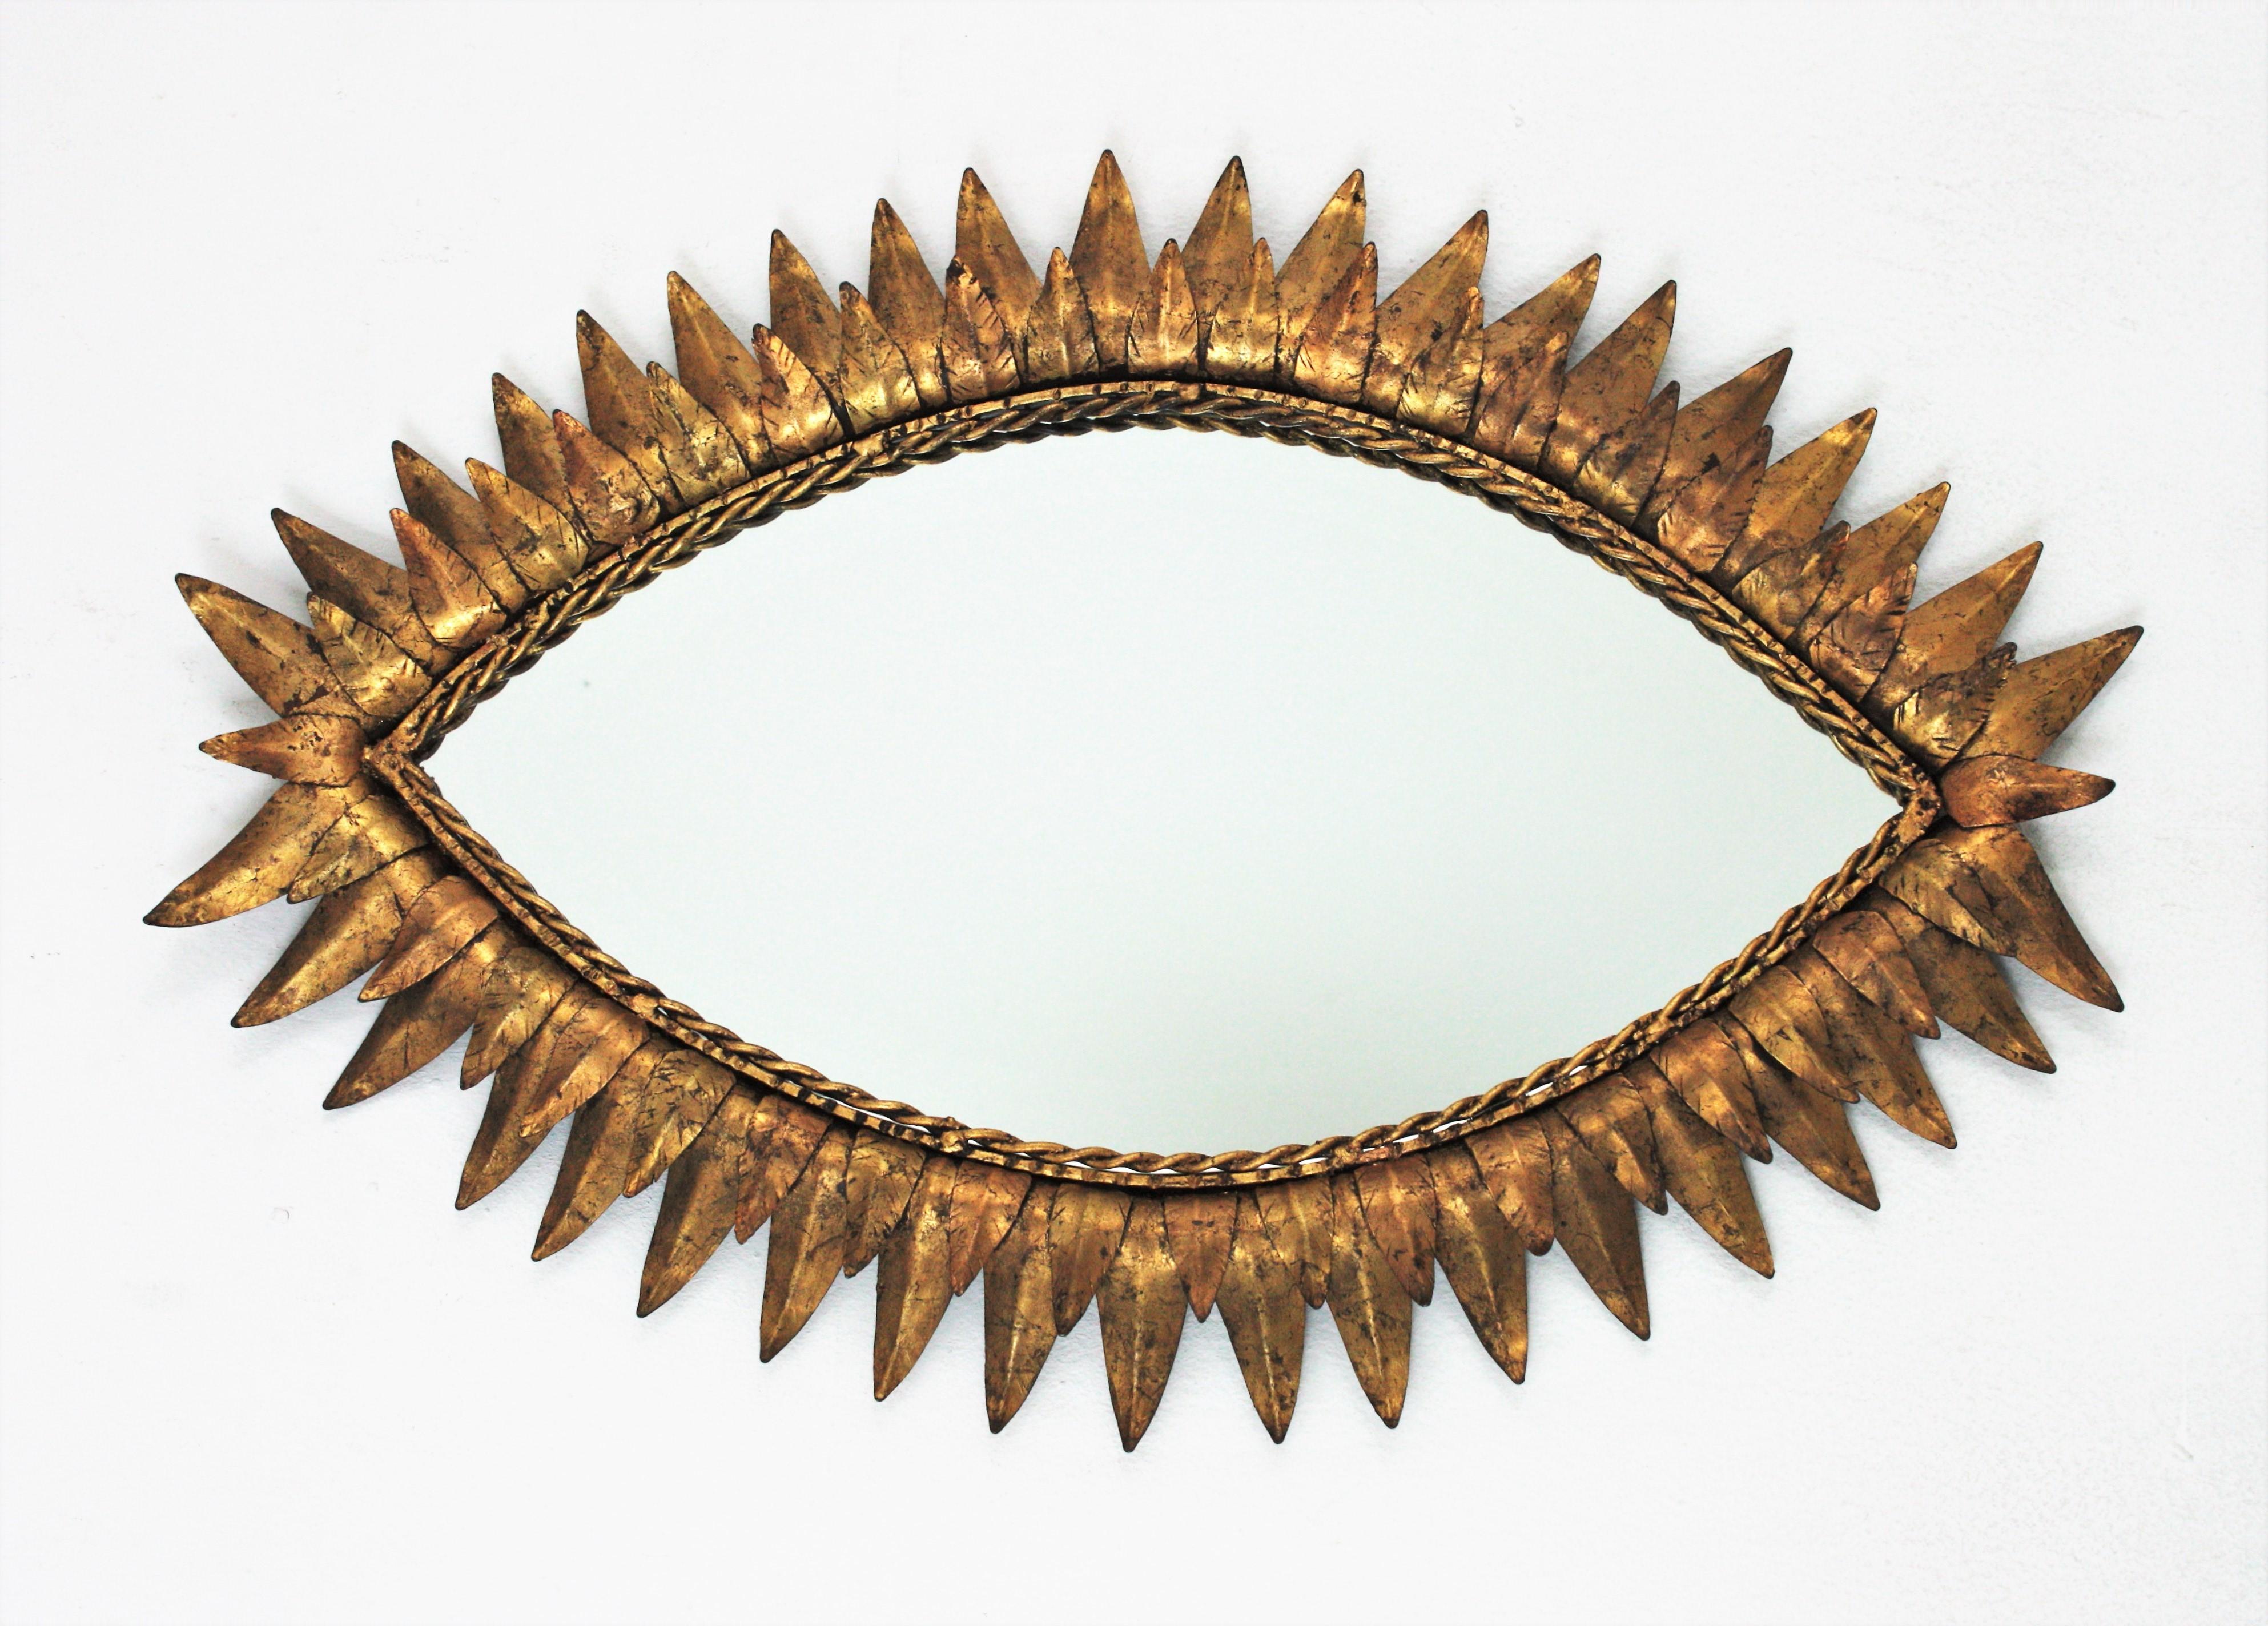 Mid-Century Modern augenförmiger Sonnenschliffspiegel, Schmiedeeisen, Blattgold, Spanien, 1950er Jahre.
Dieser hübsche Spiegel mit Sonnenschliff hat einen doppellagigen Rahmen mit Blättern in Form eines Auges. Es hat eine schöne Farbe und Patina und